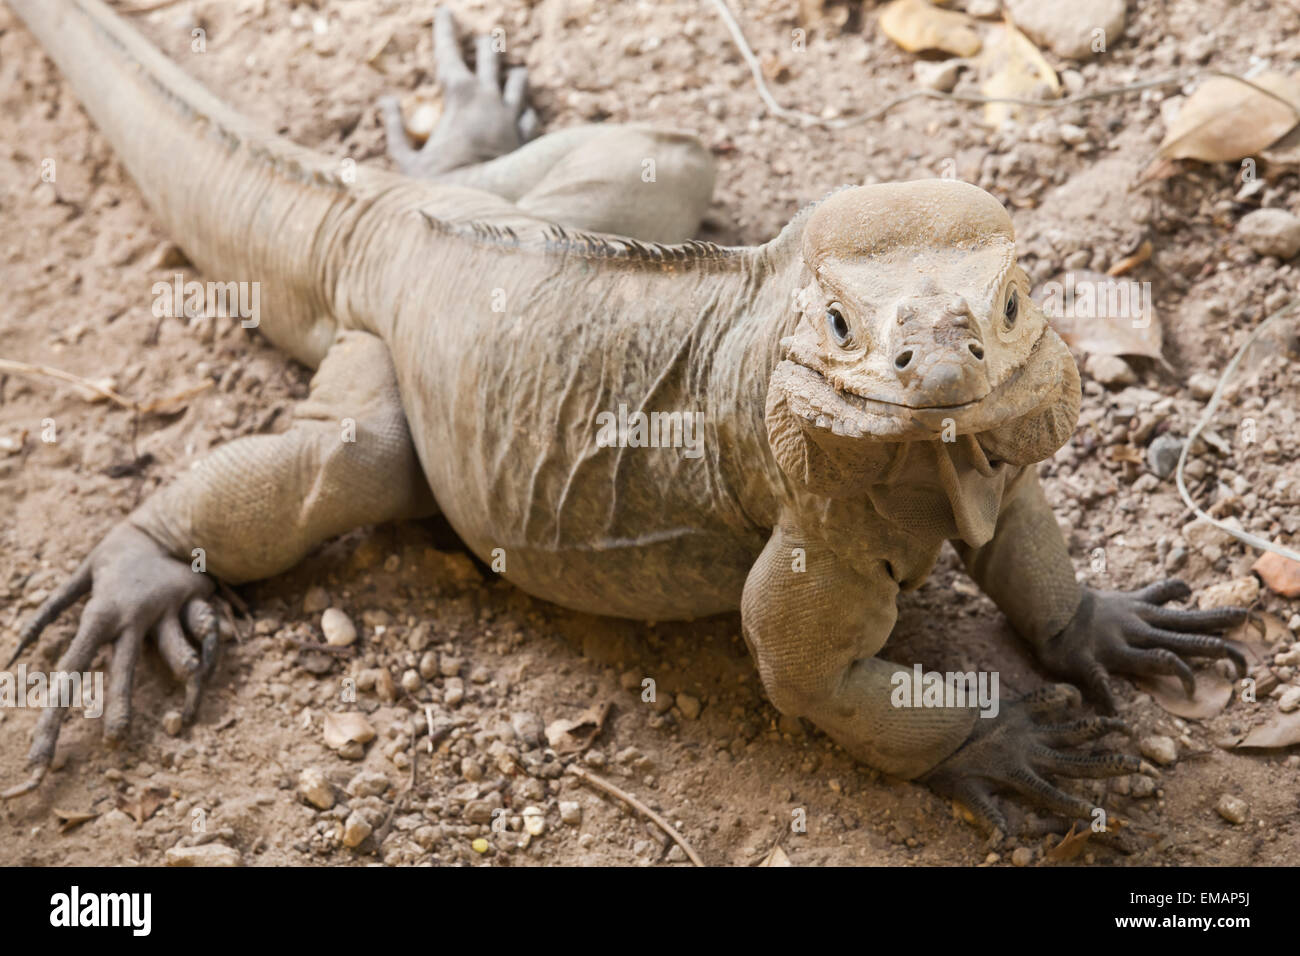 Ritratto di rinoceronte Iguana, lizard nella famiglia Iguanidae, Repubblica Dominicana, foto con messa a fuoco selettiva e DOF poco profondo Foto Stock